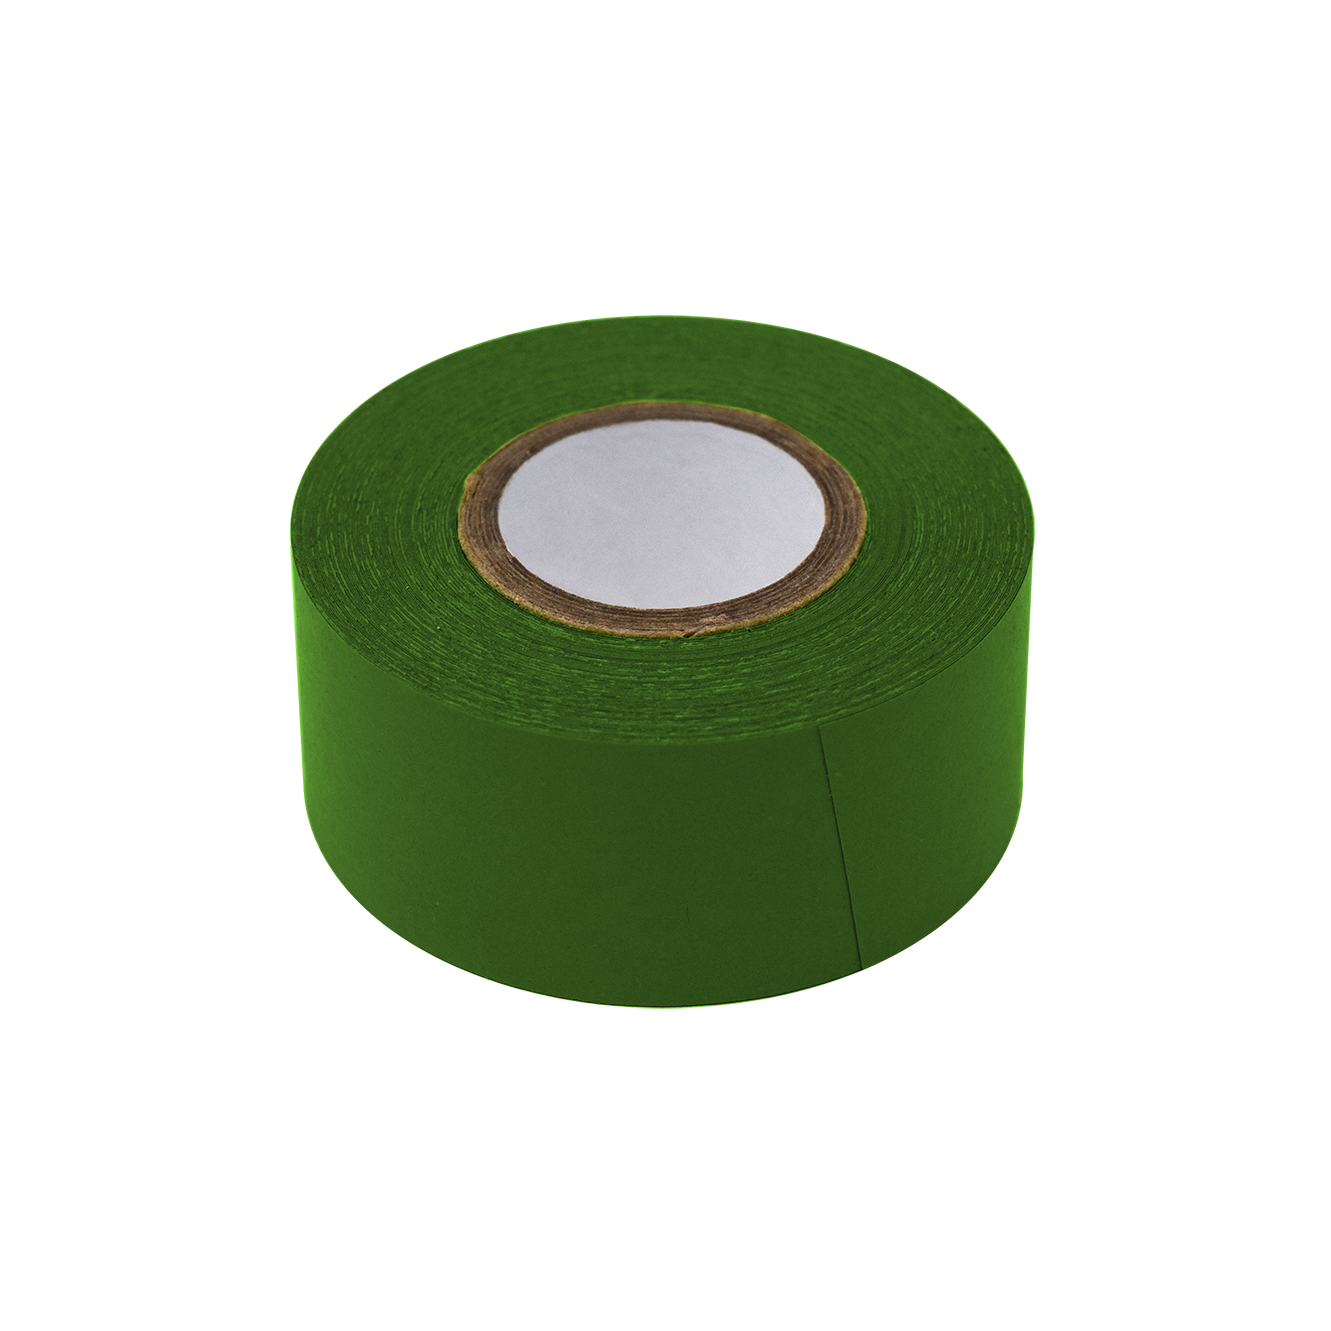 Globe Scientific Labeling Tape, 1" x 500" per Roll, 3 Rolls/Box, Dark Green  